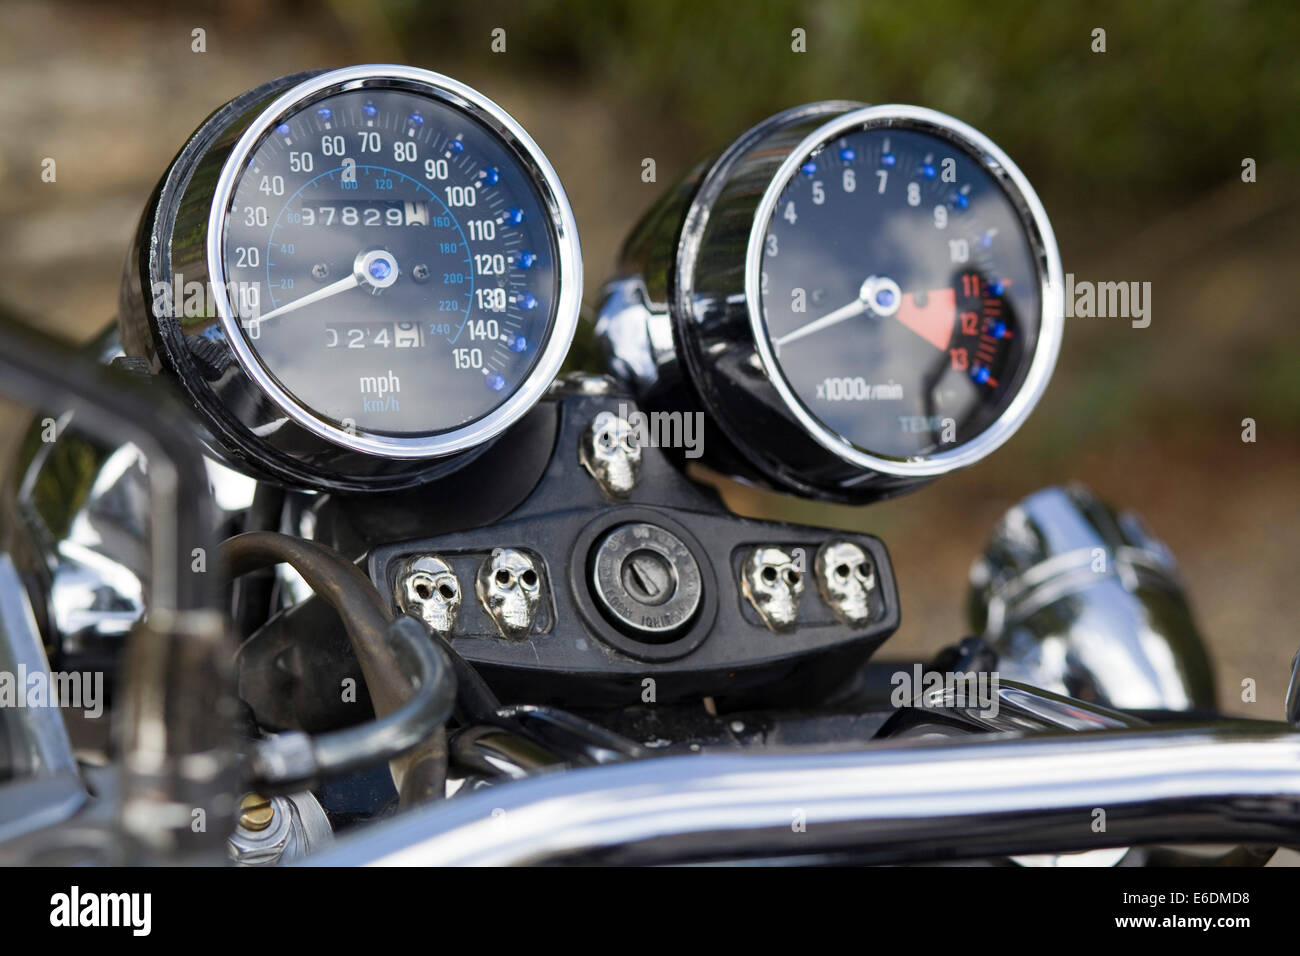 Motorcycle speedometer immagini e fotografie stock ad alta risoluzione -  Alamy